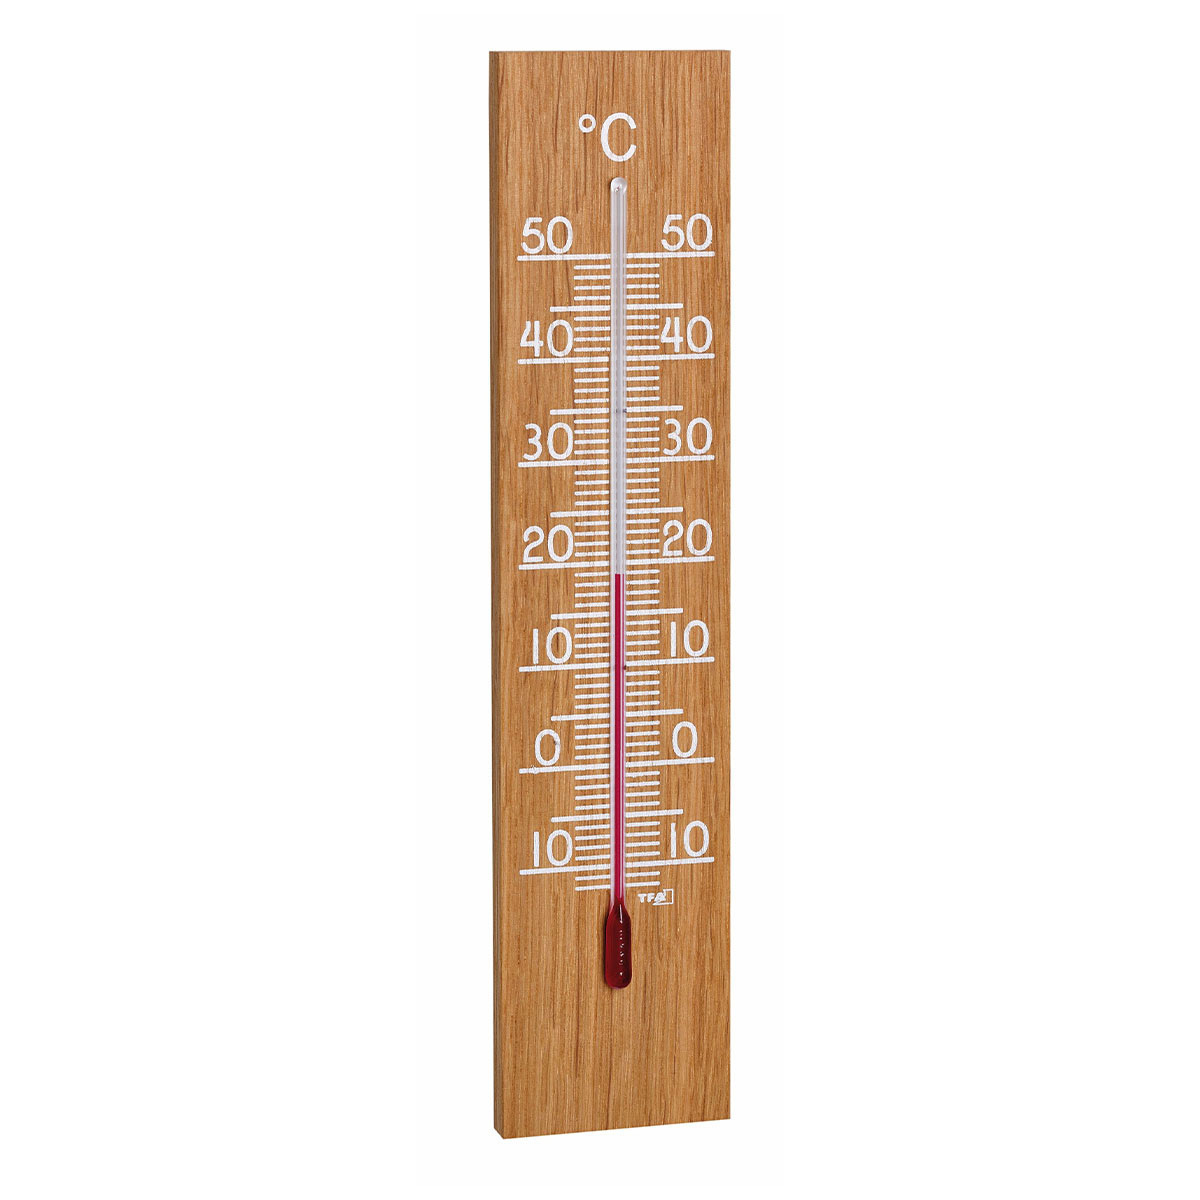 NIKJEBDF 【Räumungspreis】5X Holzthermometer,Aussenthermometer, Thermometer  Gartenthermometer Analog Aus Holz Für Innen Und Außen,thermometer analog